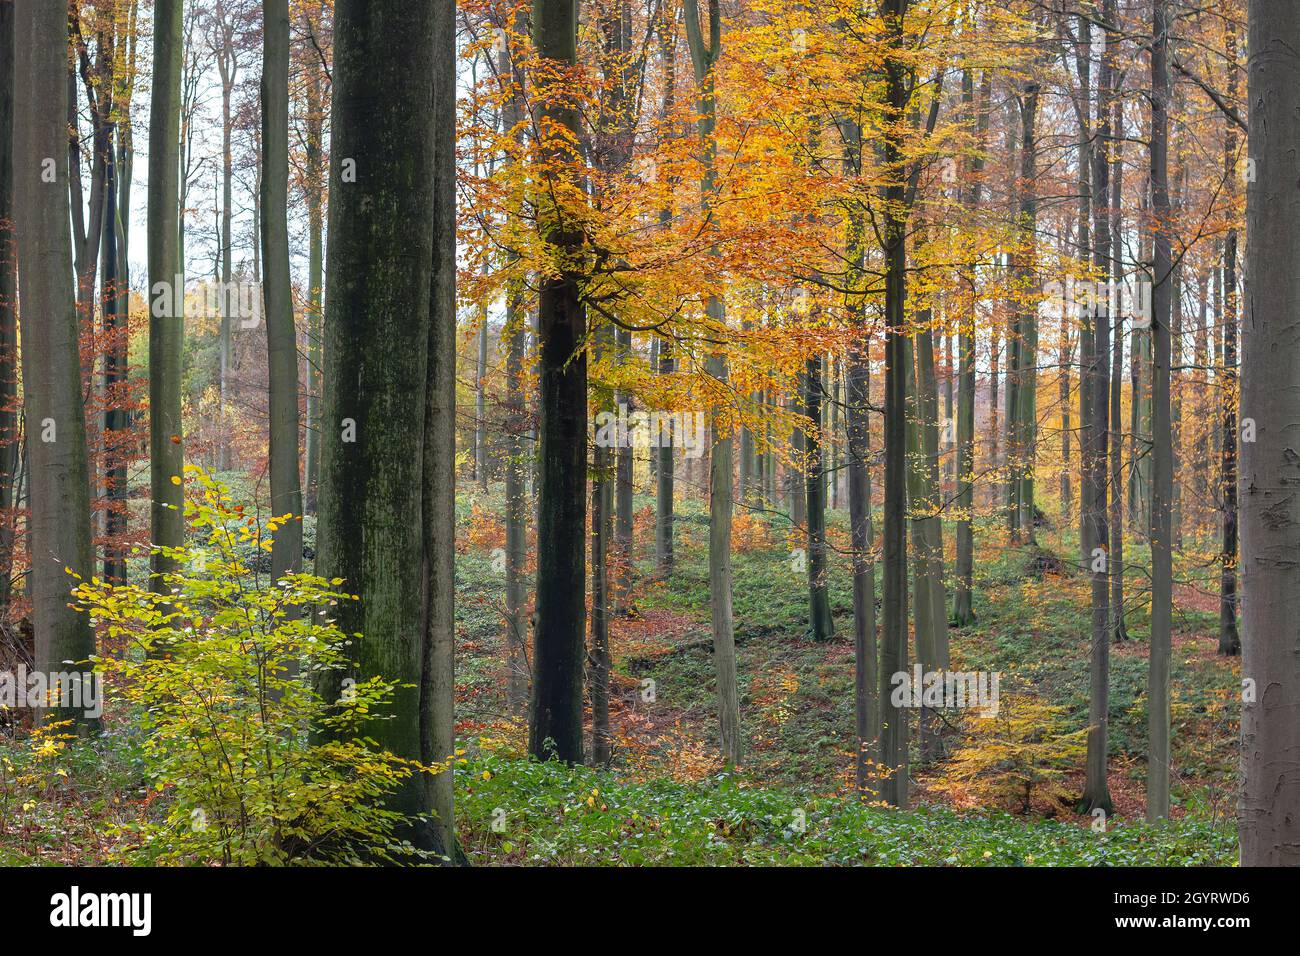 Forêt de hêtres anciens (Fagus sylvatica) avec feuillage décidus coloré en automne Banque D'Images